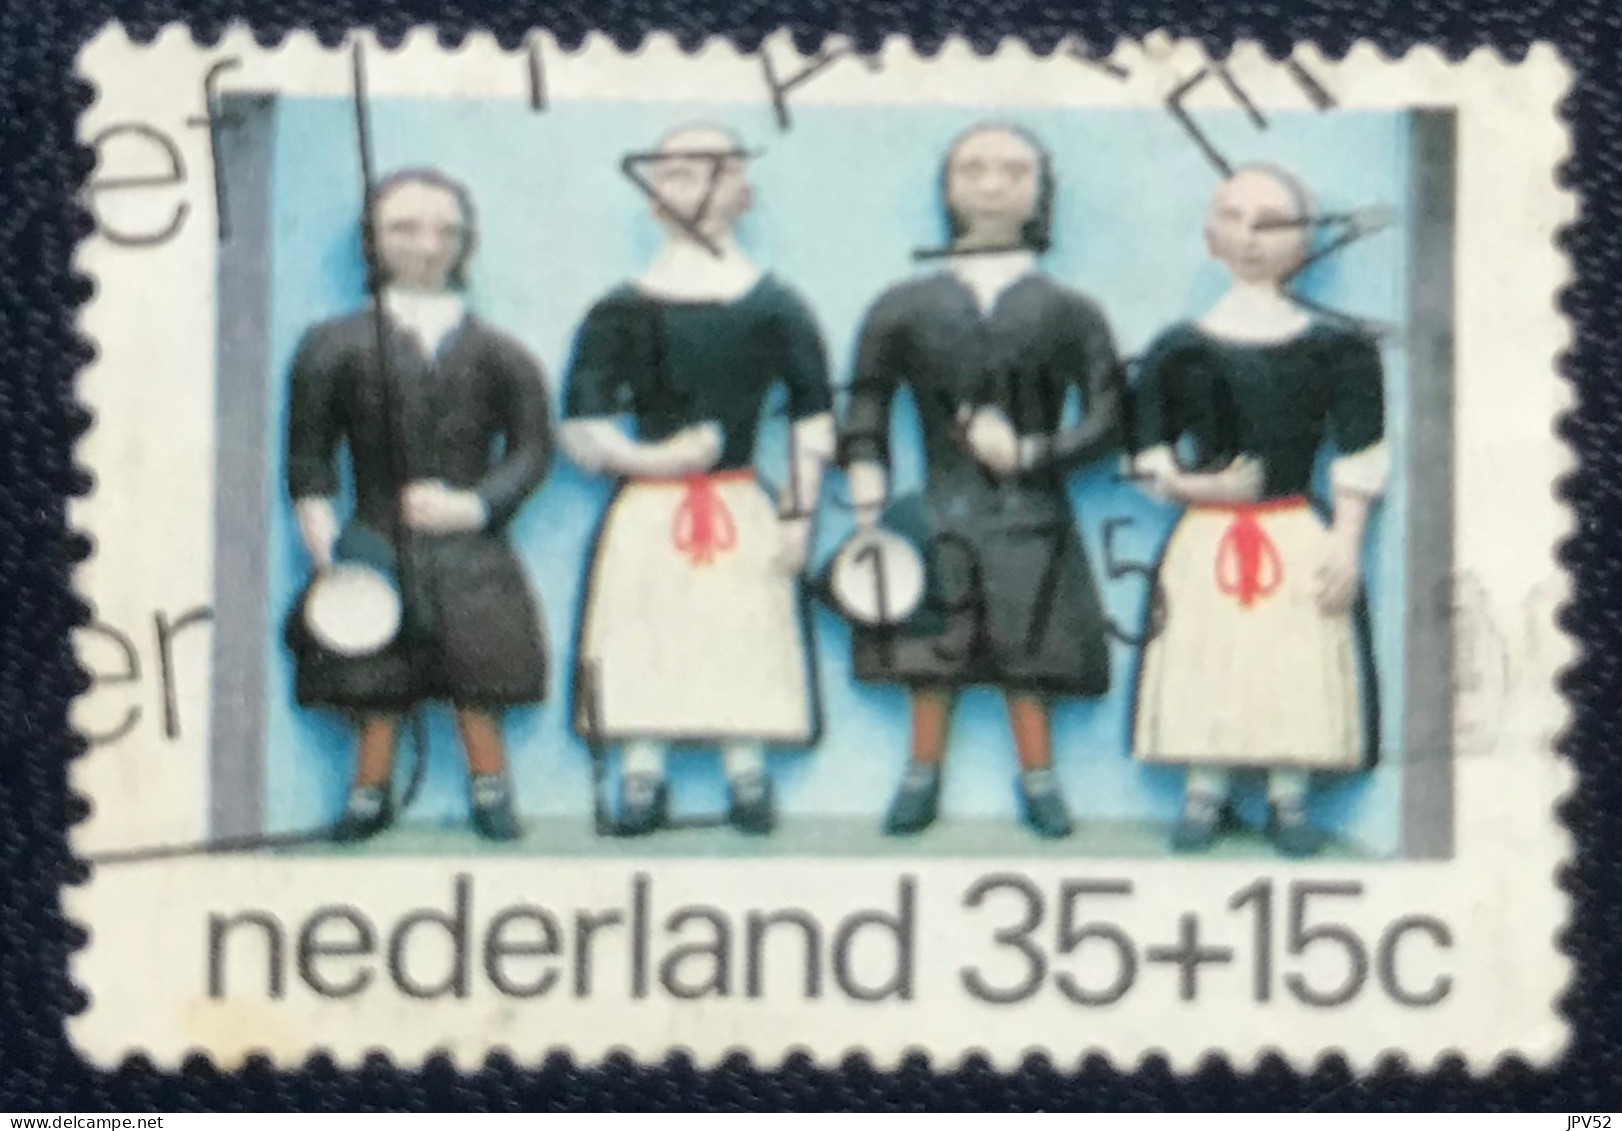 Nederland - C1/23 - 1975 - (°)used - Michel 1059 - Kinderzegels - Usados